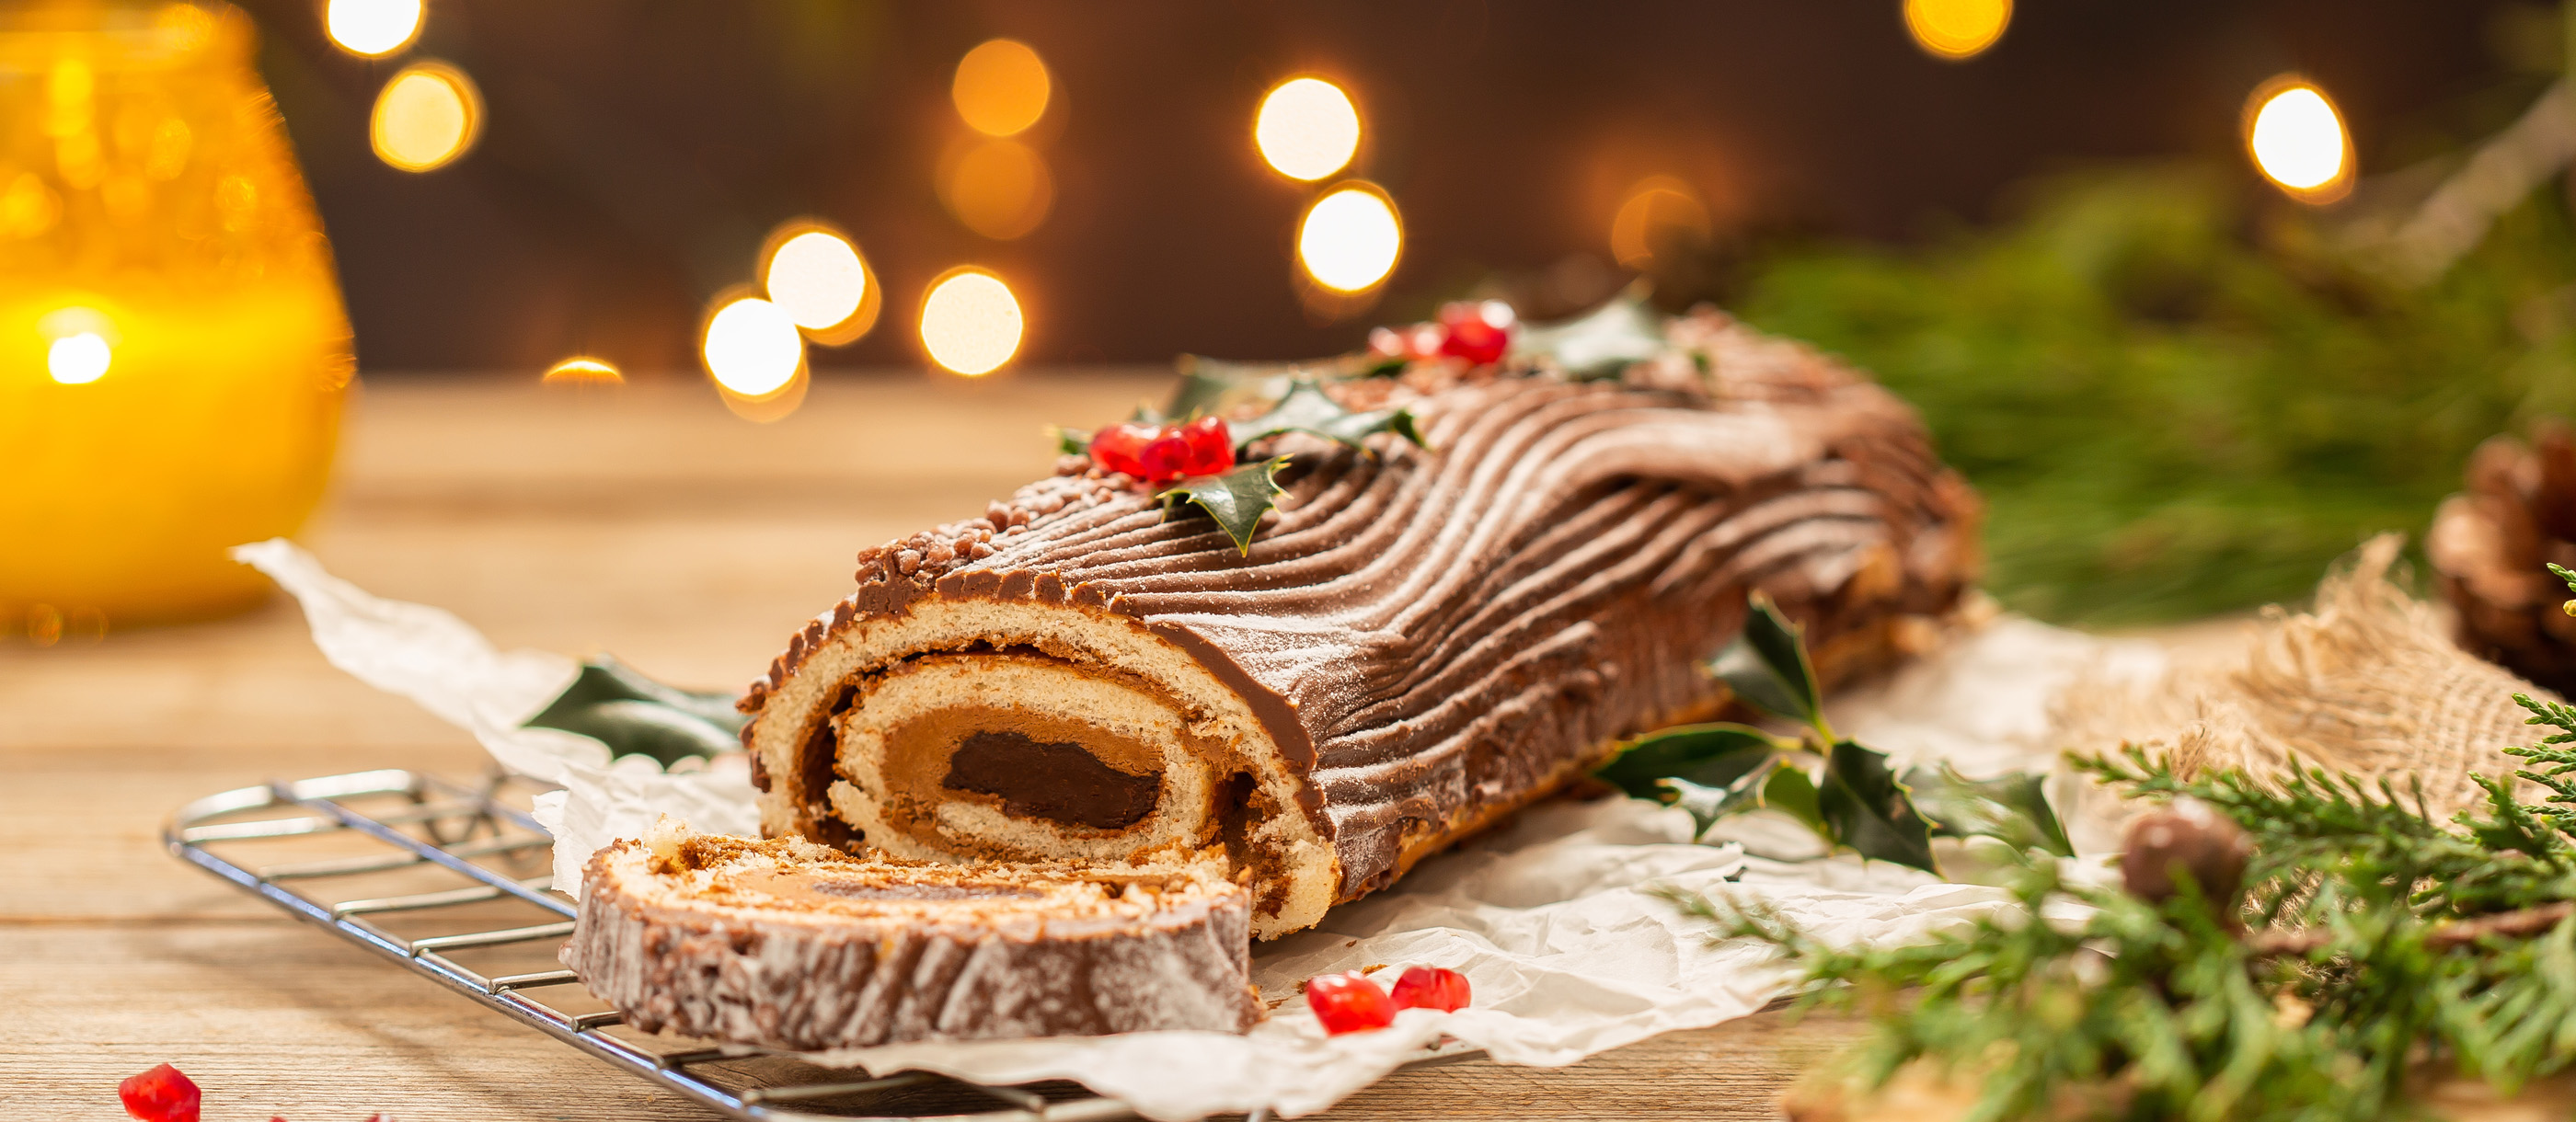 Bánh gối đường là món tráng miệng ngon nhưng đầy cảm hứng cho bữa tiệc Giáng sinh. Thưởng thức hình ảnh của trang trí bánh để khám phá công thức và các bước để tạo ra món tráng miệng tuyệt vời này.